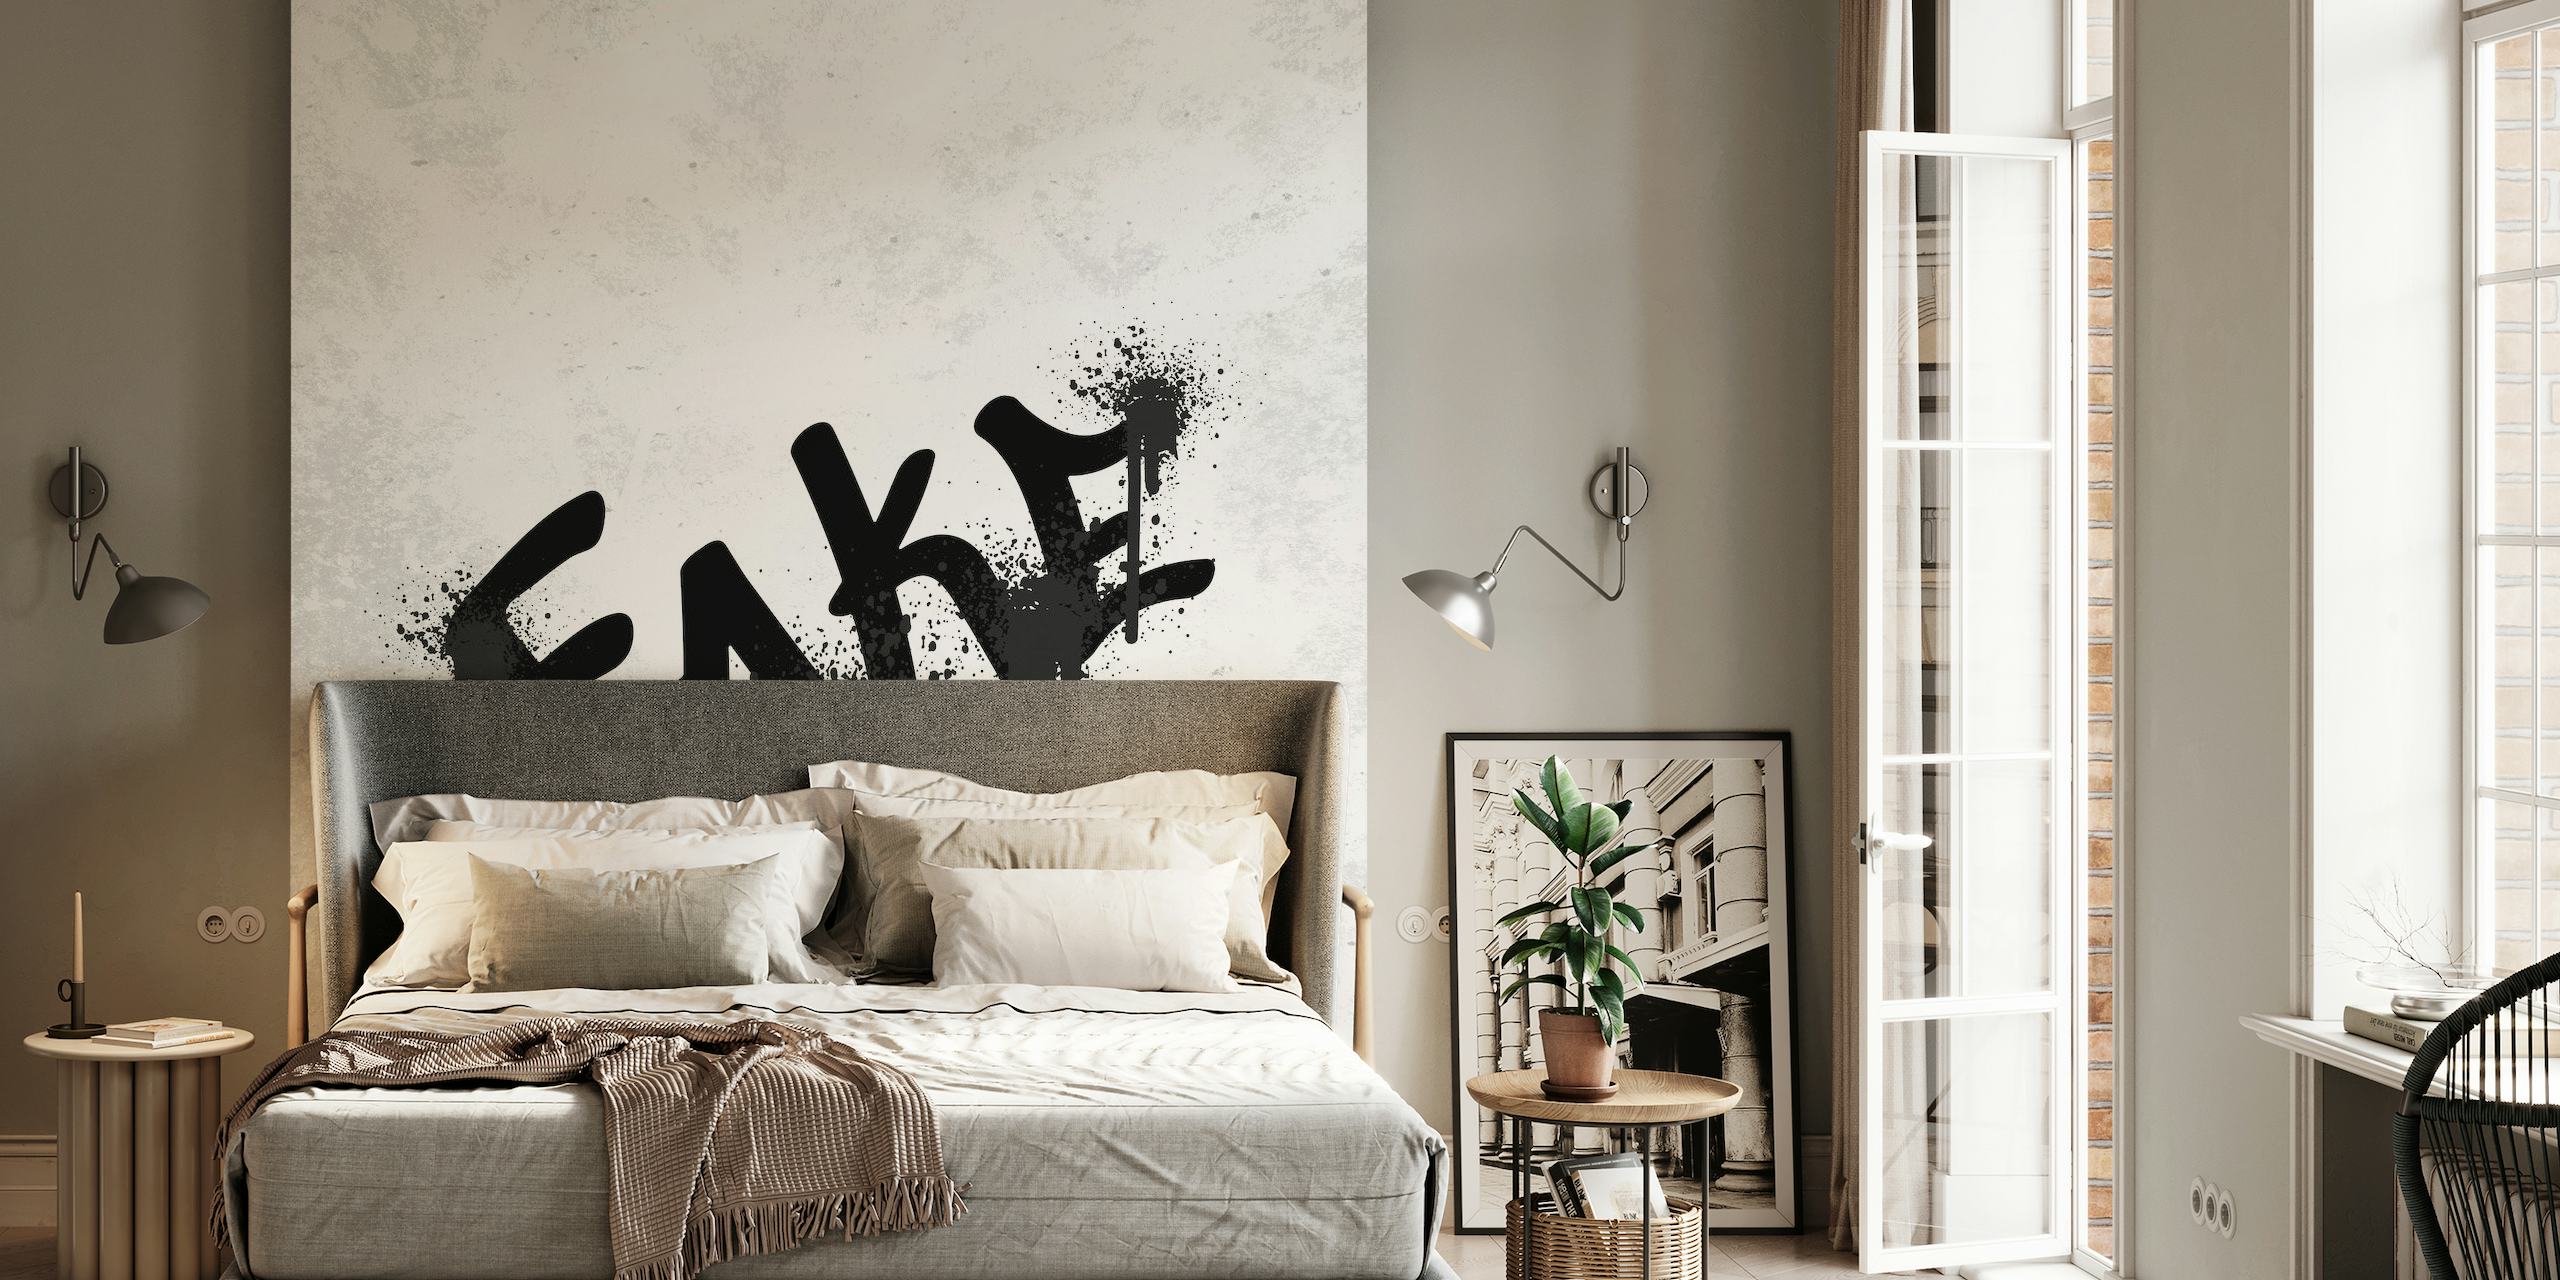 Grafite preto lendo 'FAKE' em um mural de parede com fundo texturizado de mármore branco